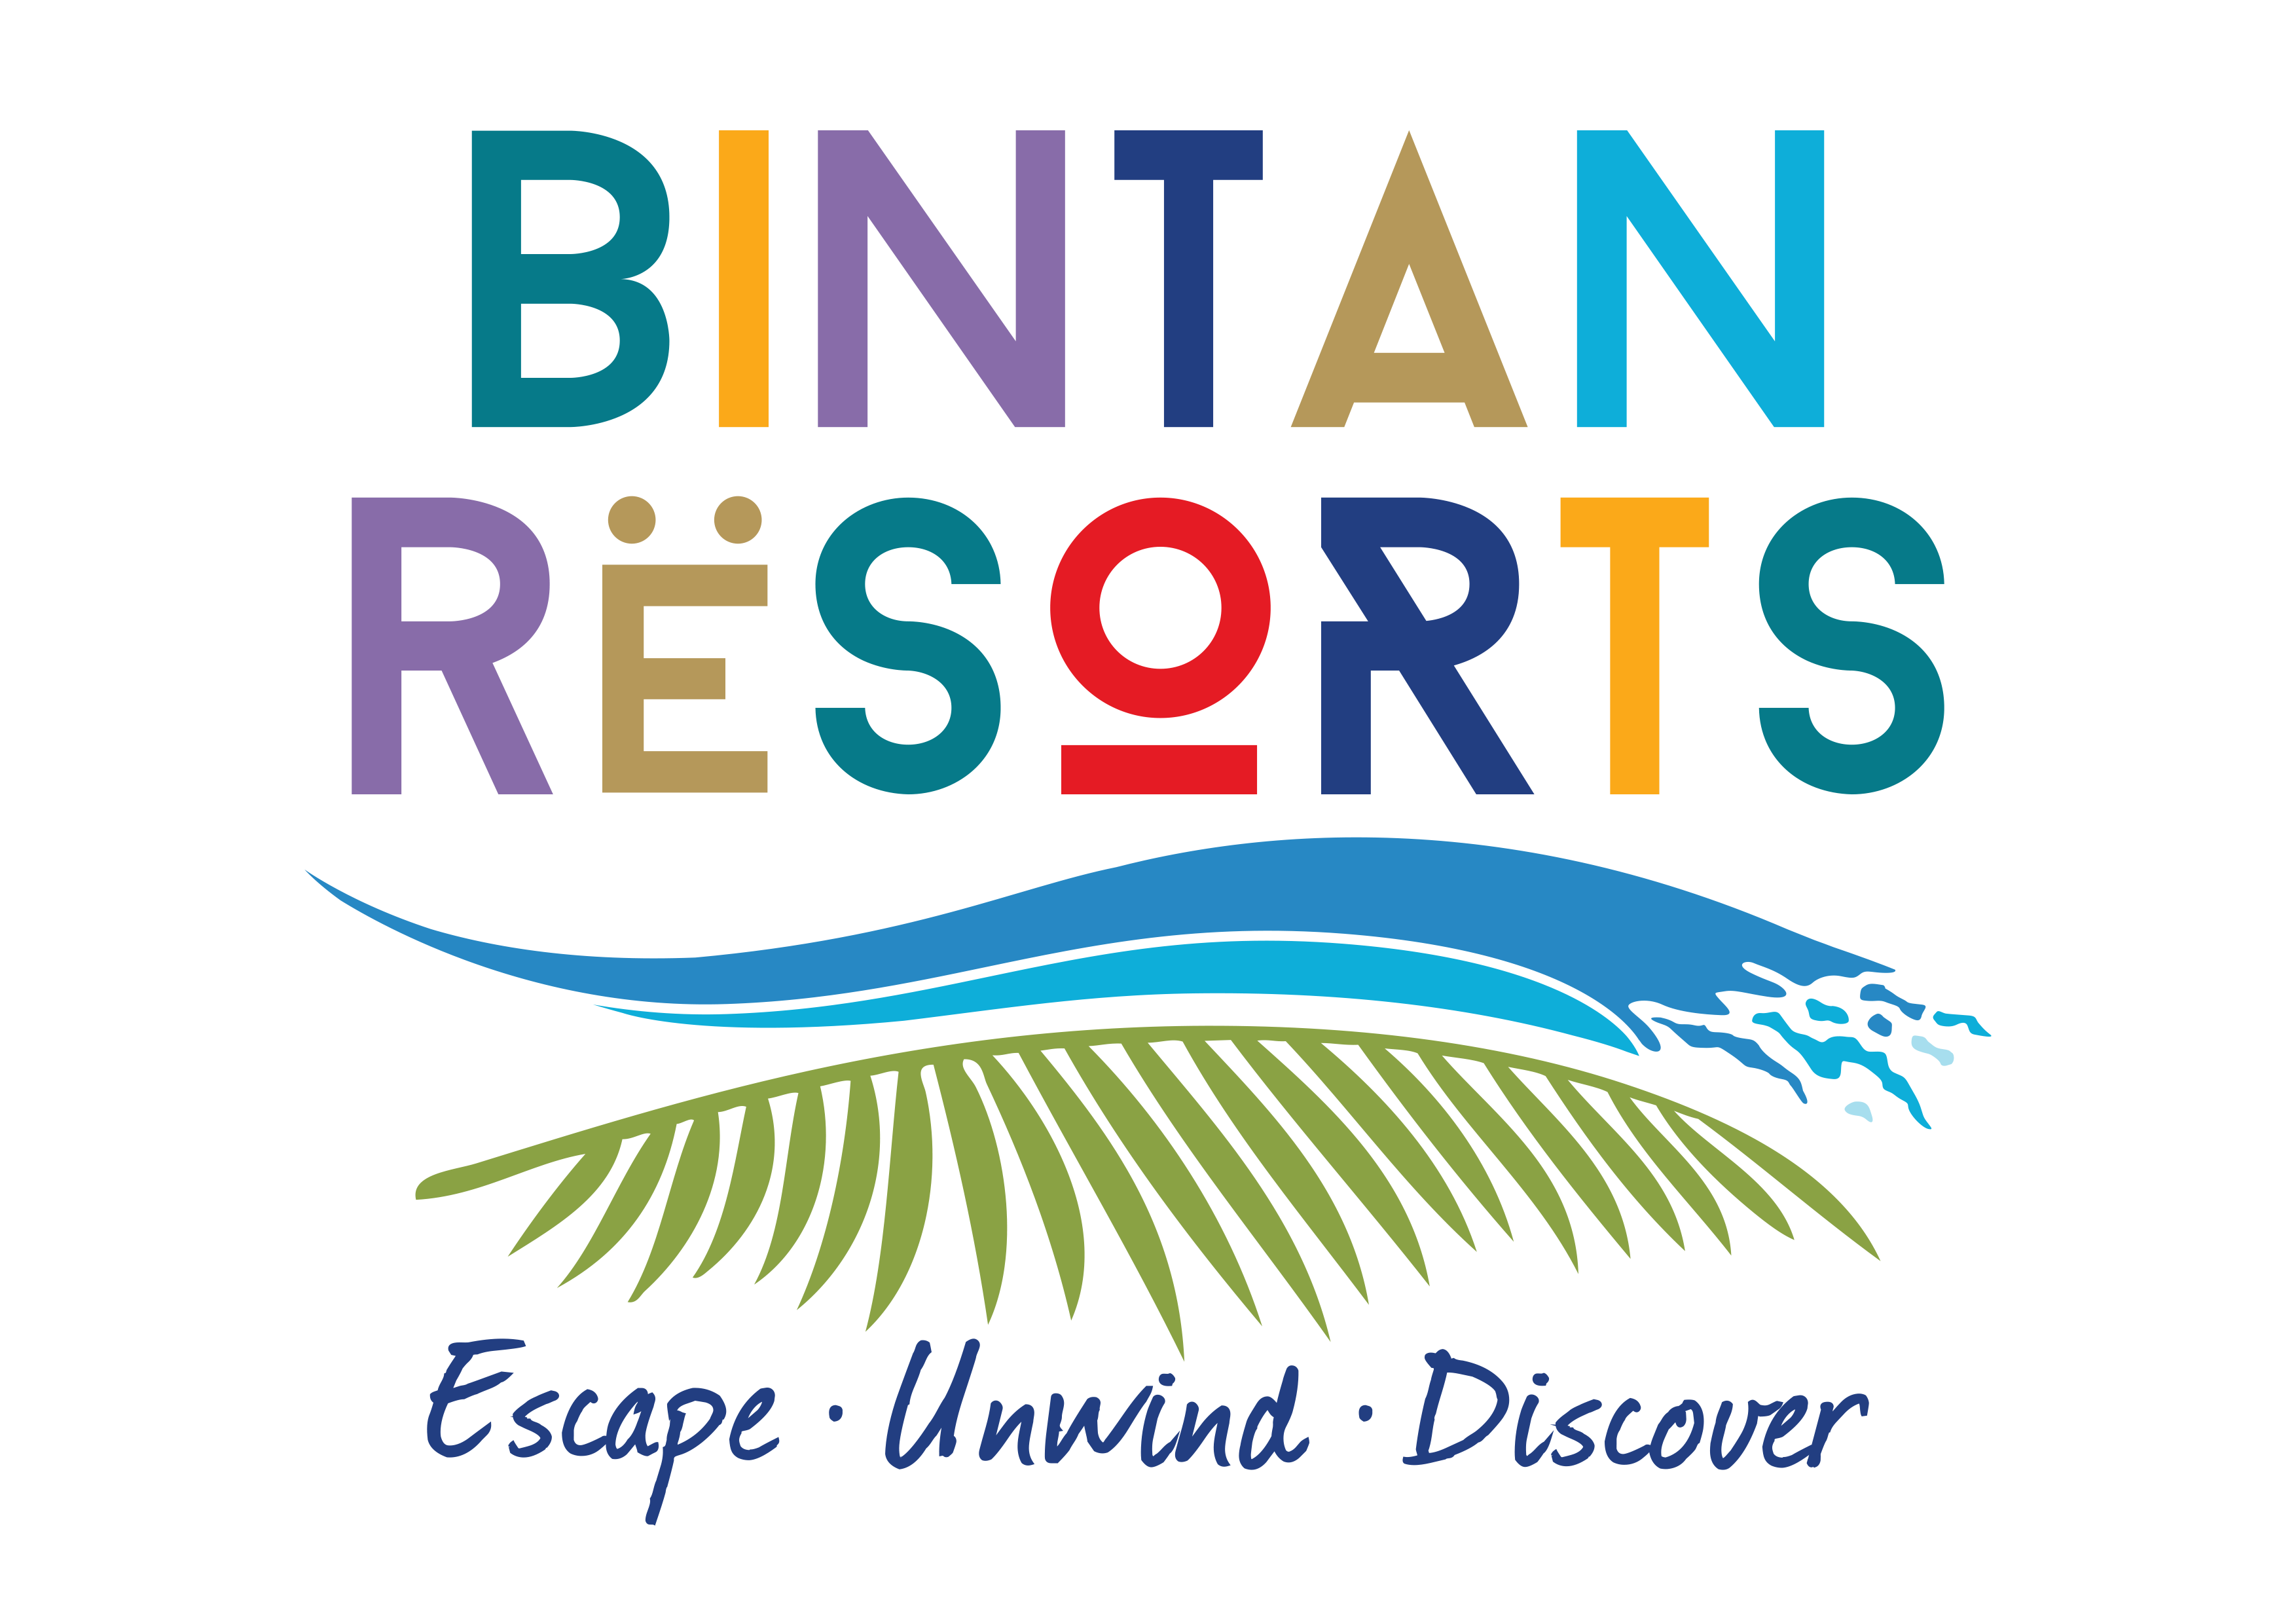 Bintan Resorts logo - Square